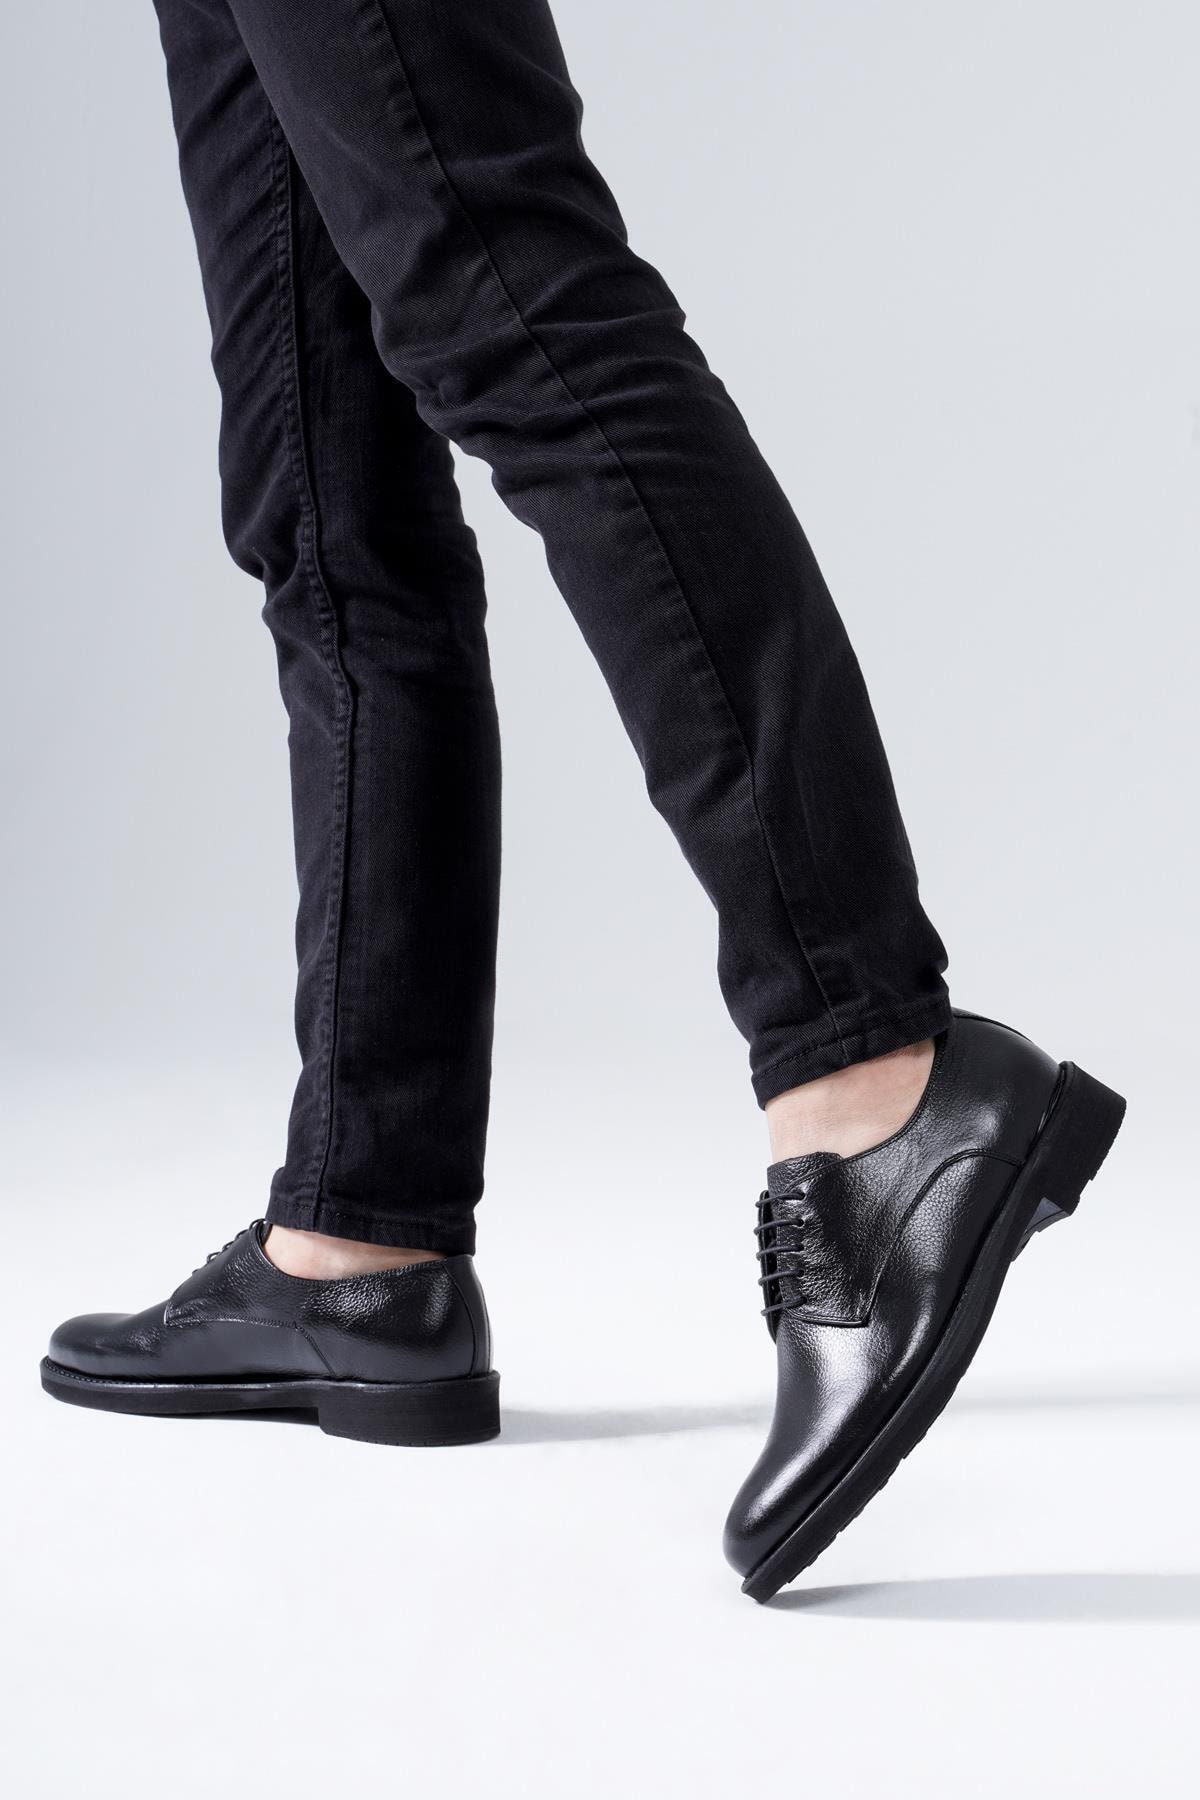 Мужская классическая обувь из натуральной кожи, повседневная модель на шнуровке CZ London, черный